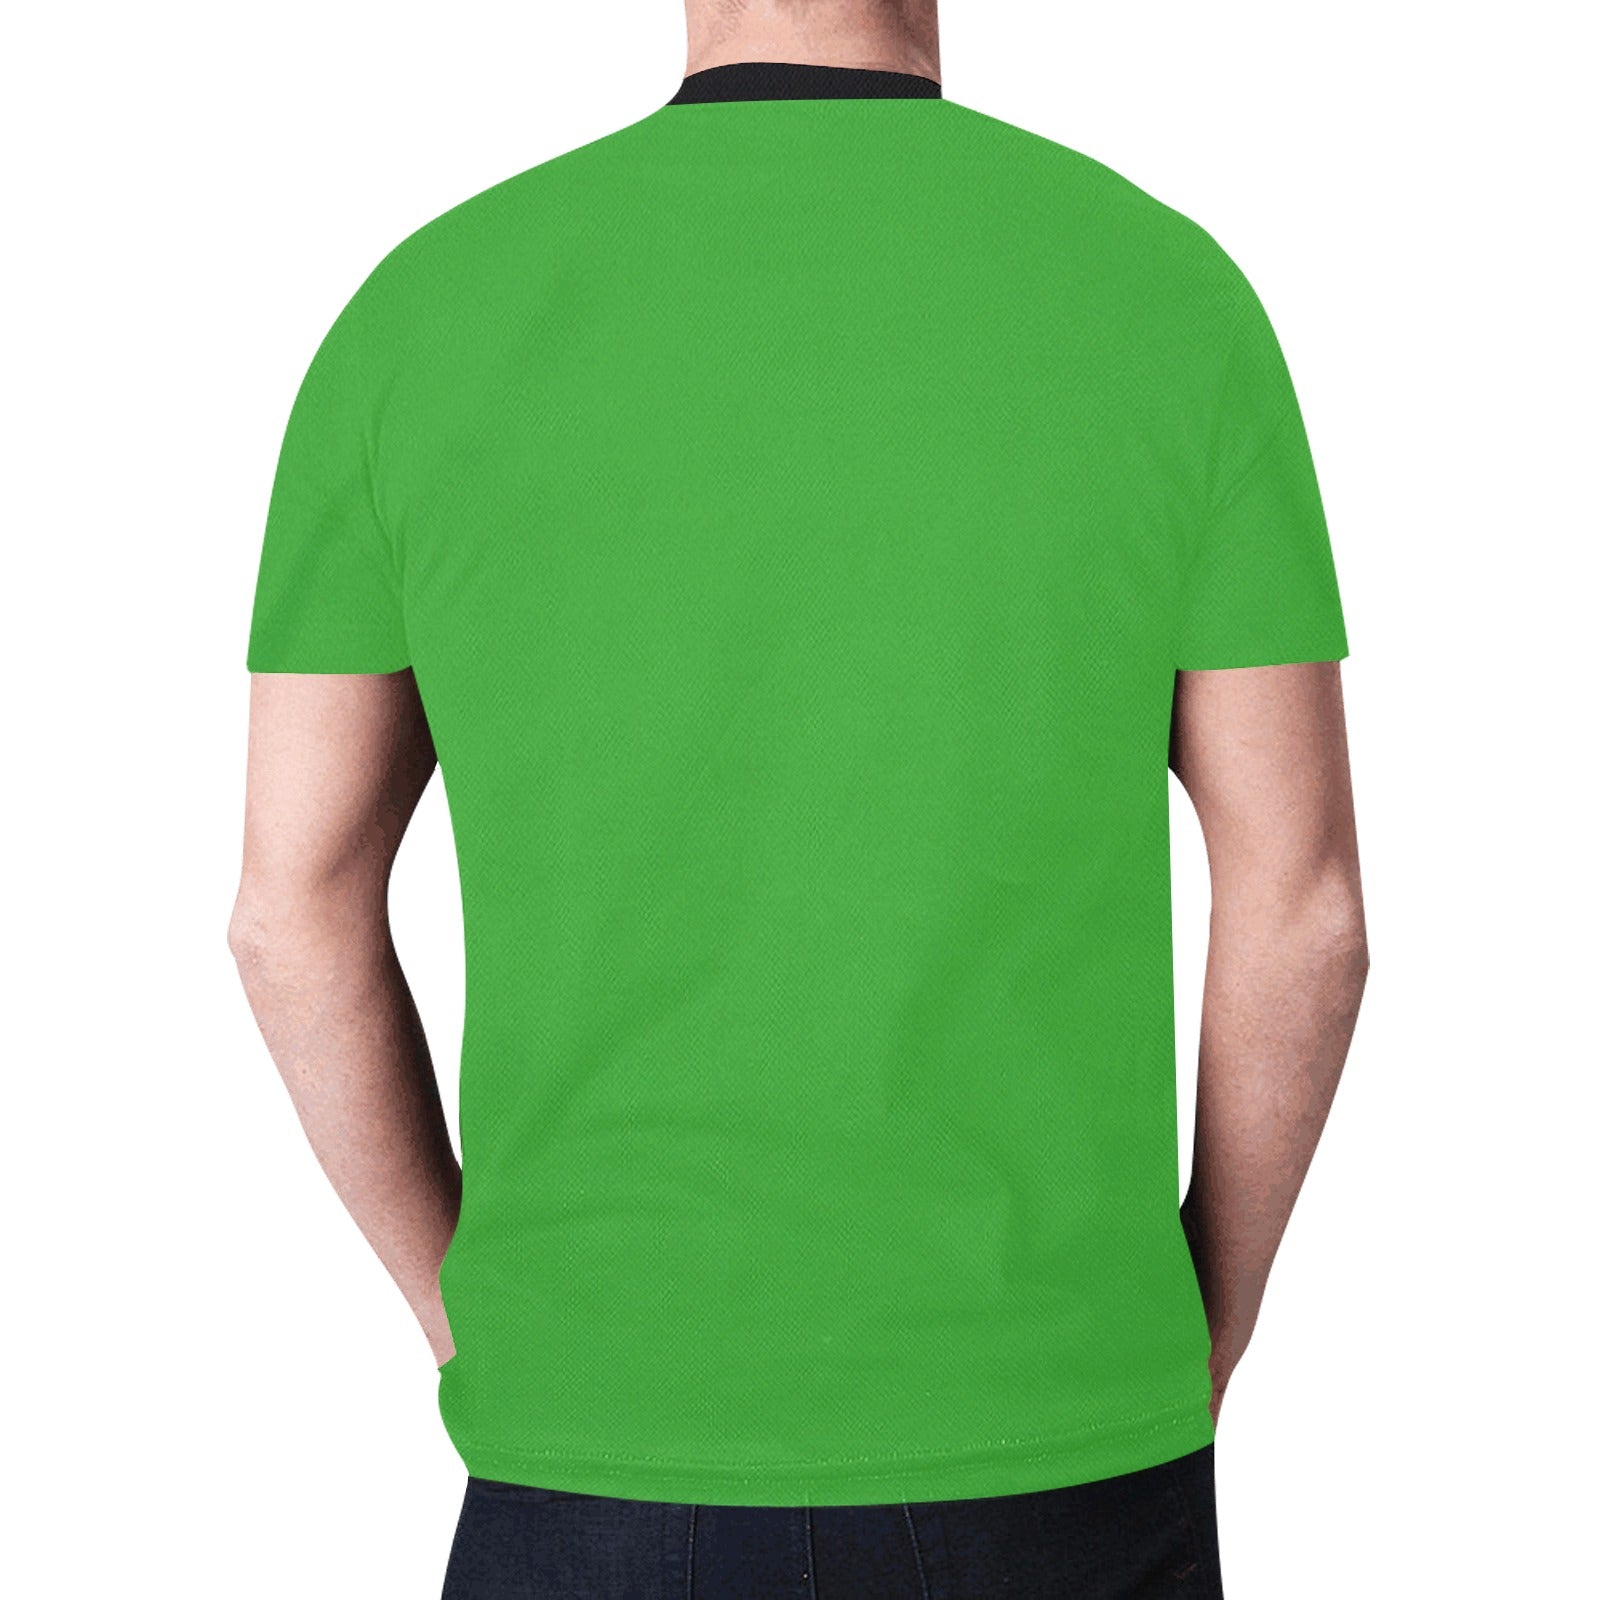 Elk Spirit Guide (Green) T-shirt for Men